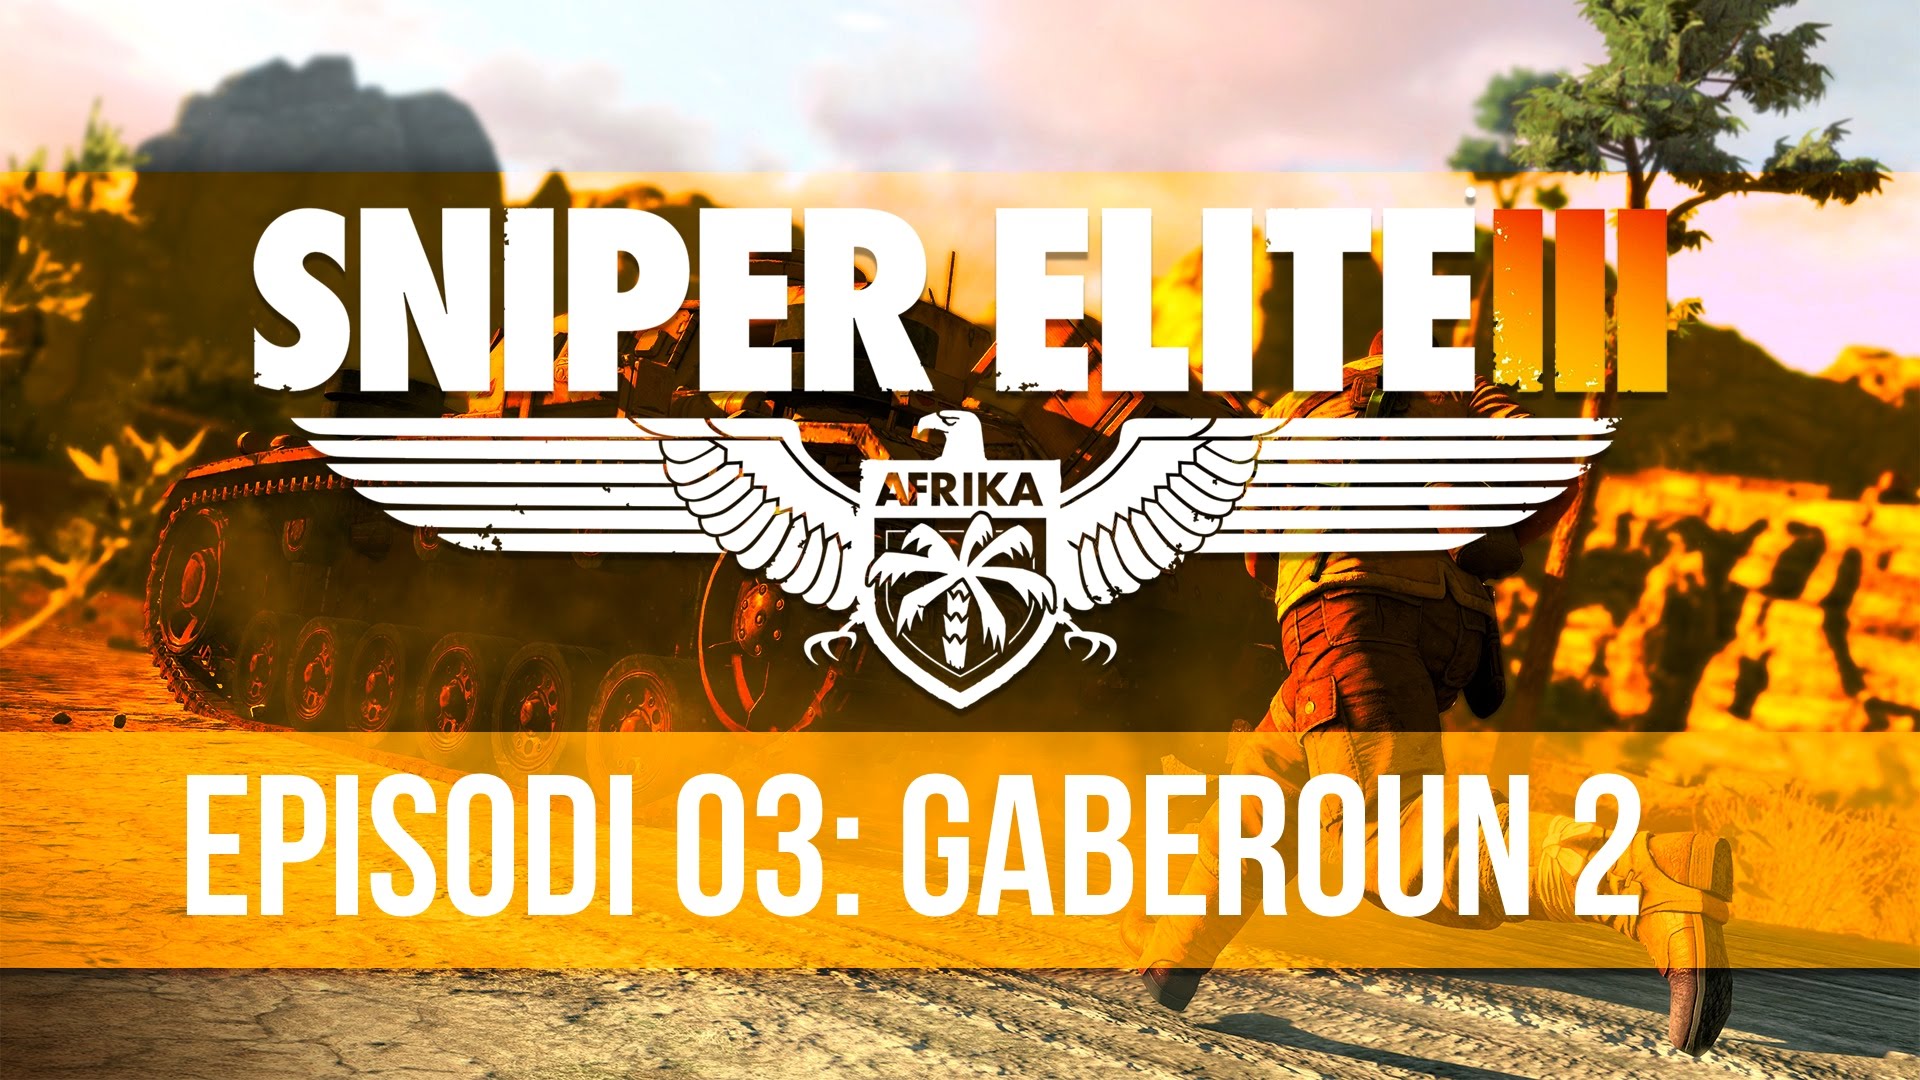 Sniper Elite III - Episodi 3: Gaberoun 2 de Dev Id